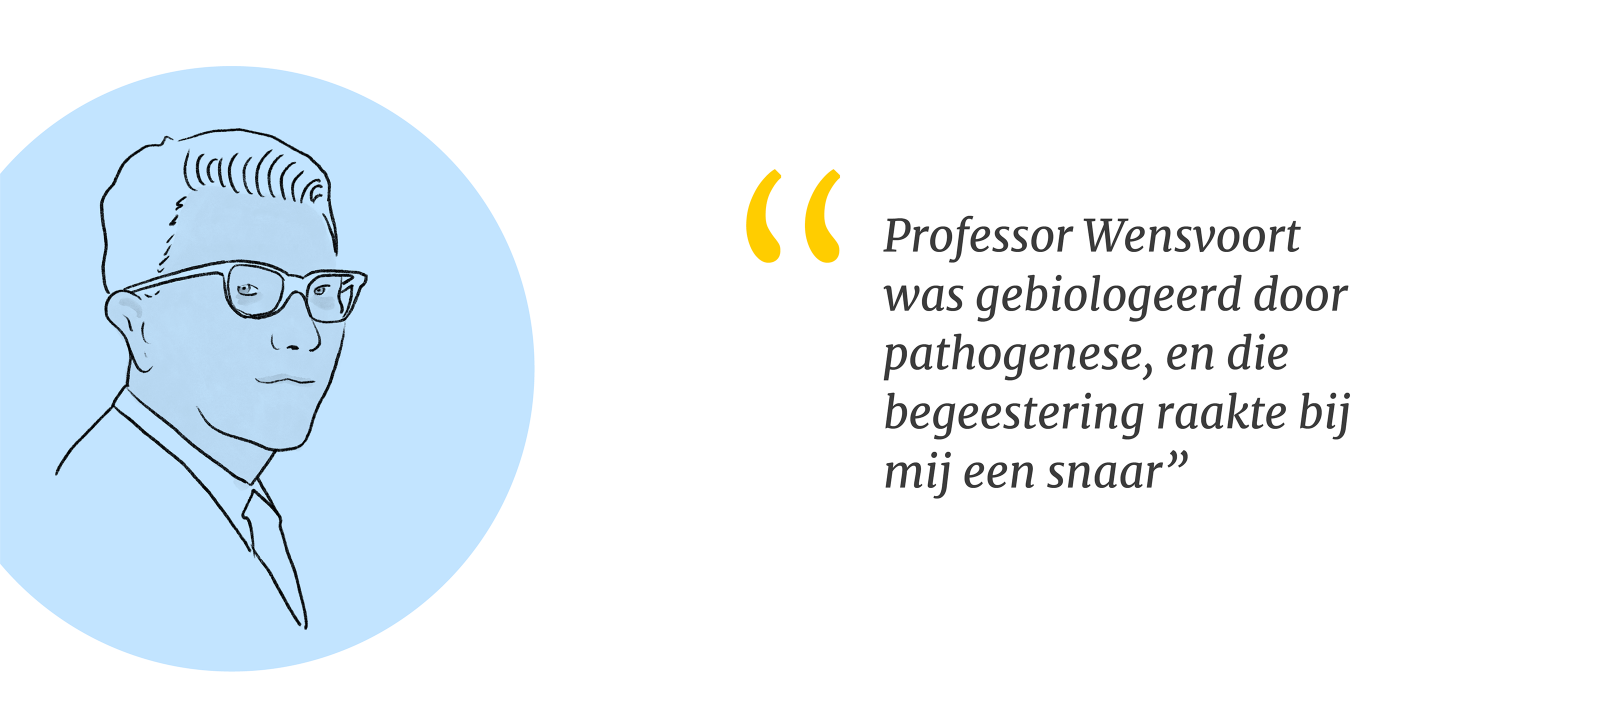 Illustratie van professor Wensvoort met quote: professor Wensvoort was gebiologeerd door pathogenese, en die begeestering raakte bij mij een snaar